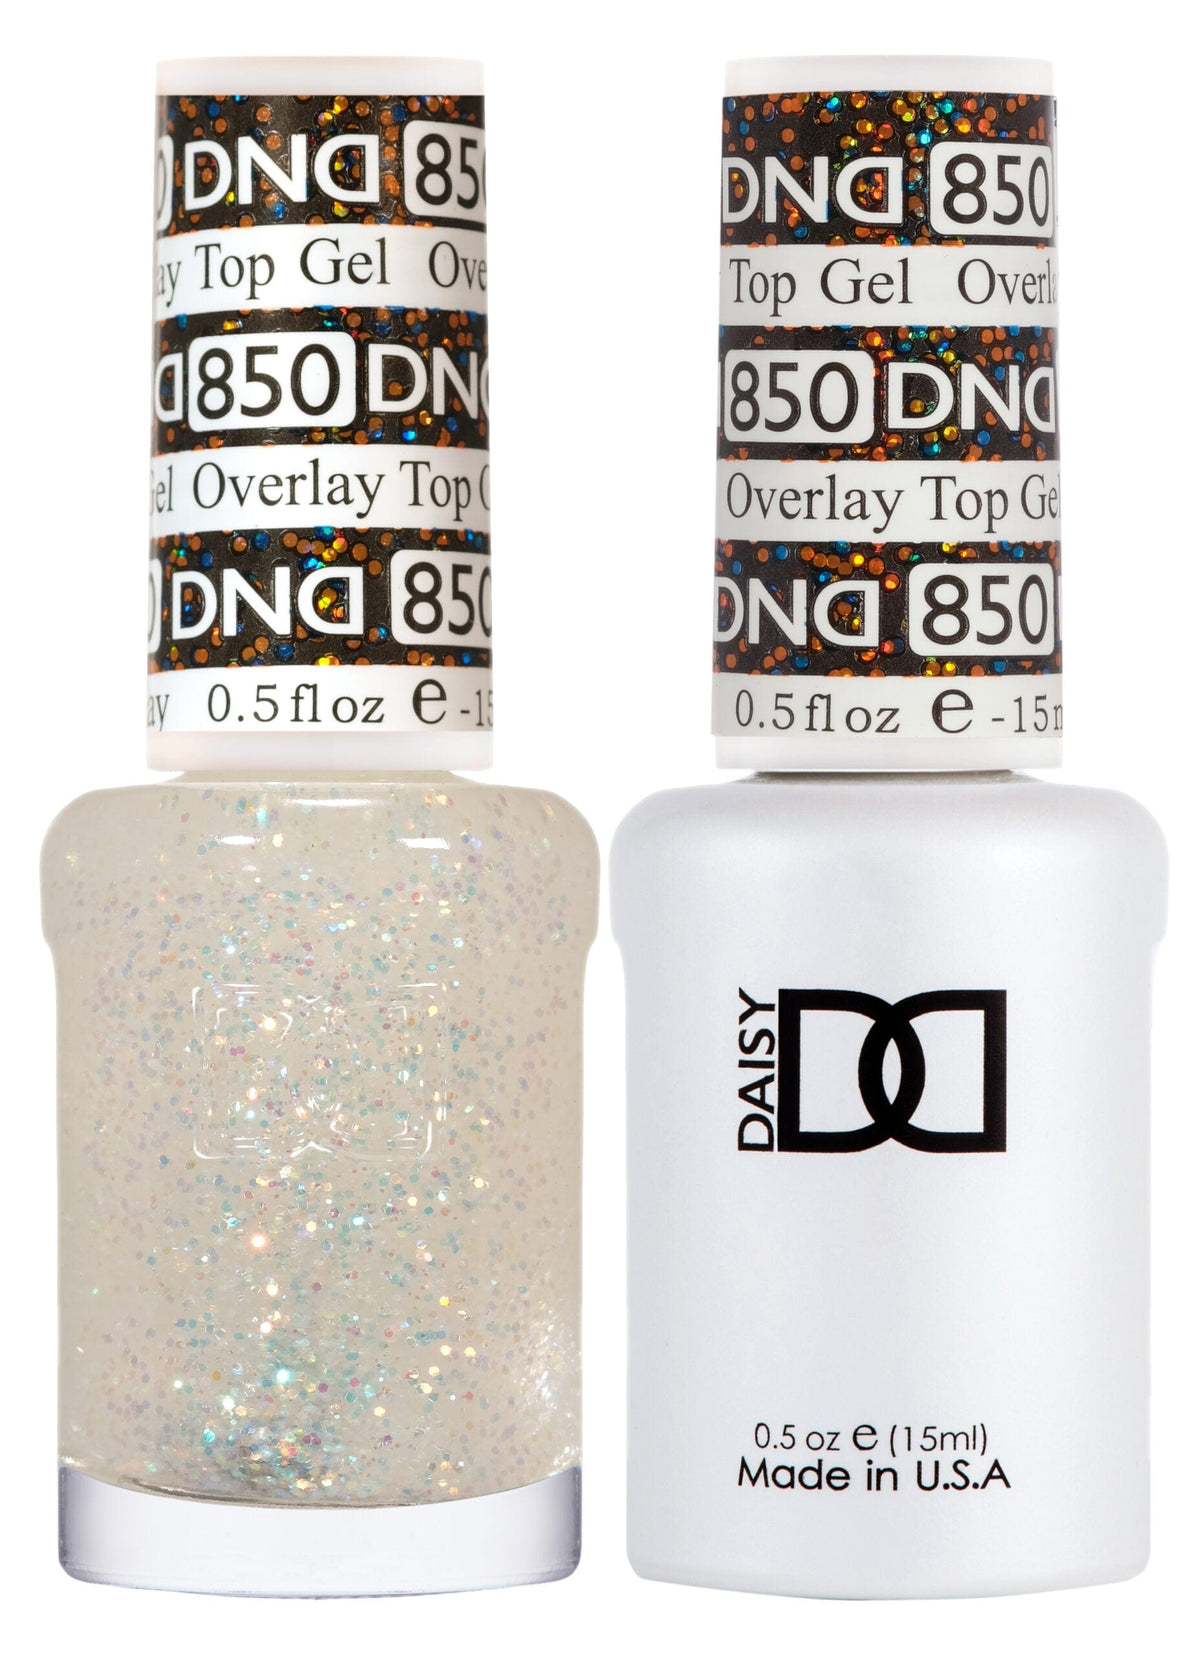 DND Duo Gel Matching Color 850 Overlay Top Gel